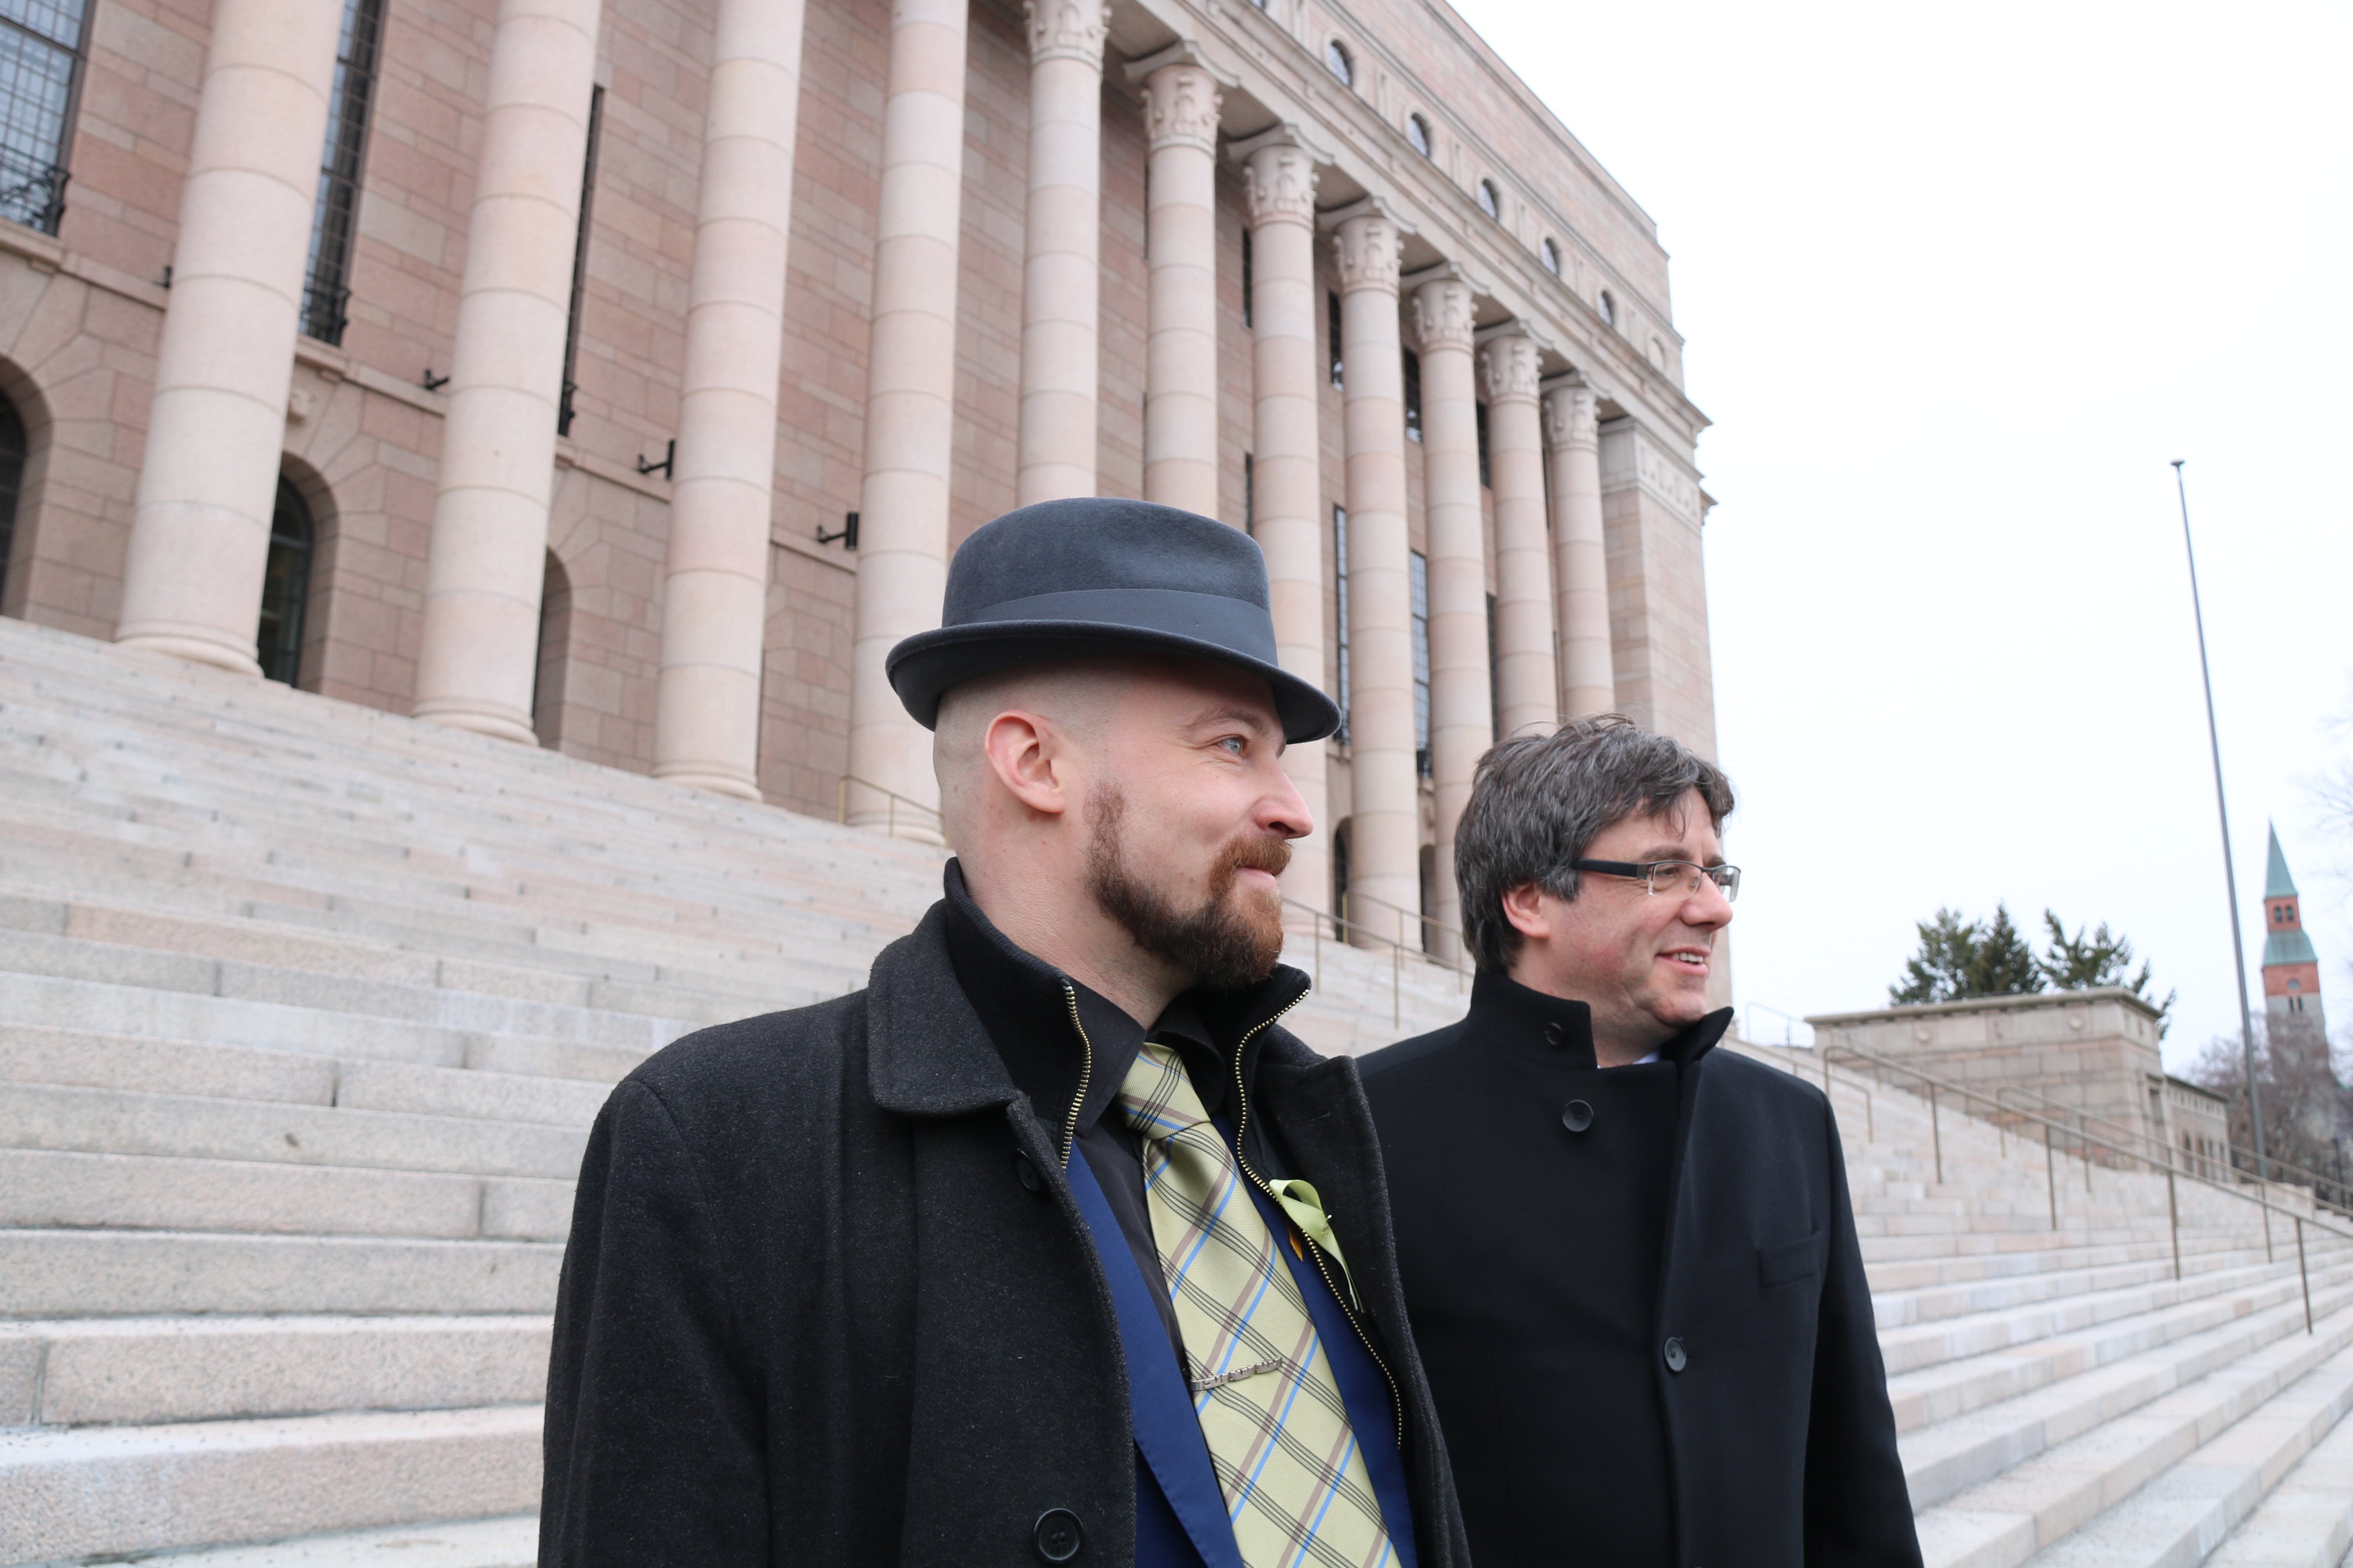 Diputados finlandeses denuncian la euroorden "política" contra Puigdemont